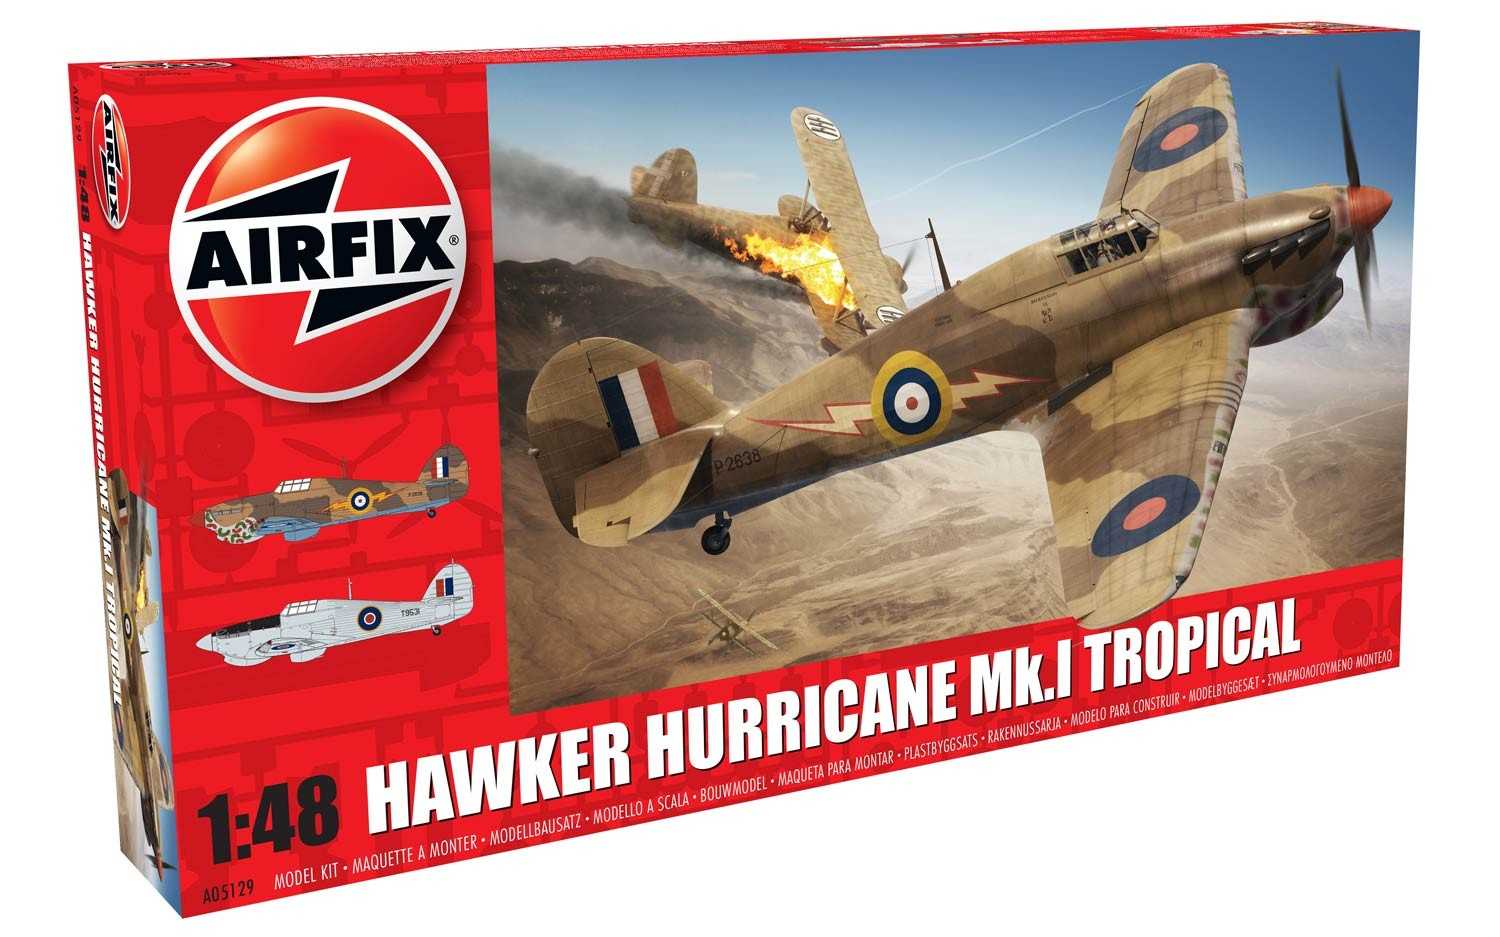 Airfix Classic Kit letadlo A05129 - Hawker Hurricane Mk1 - Tropical (1:48)